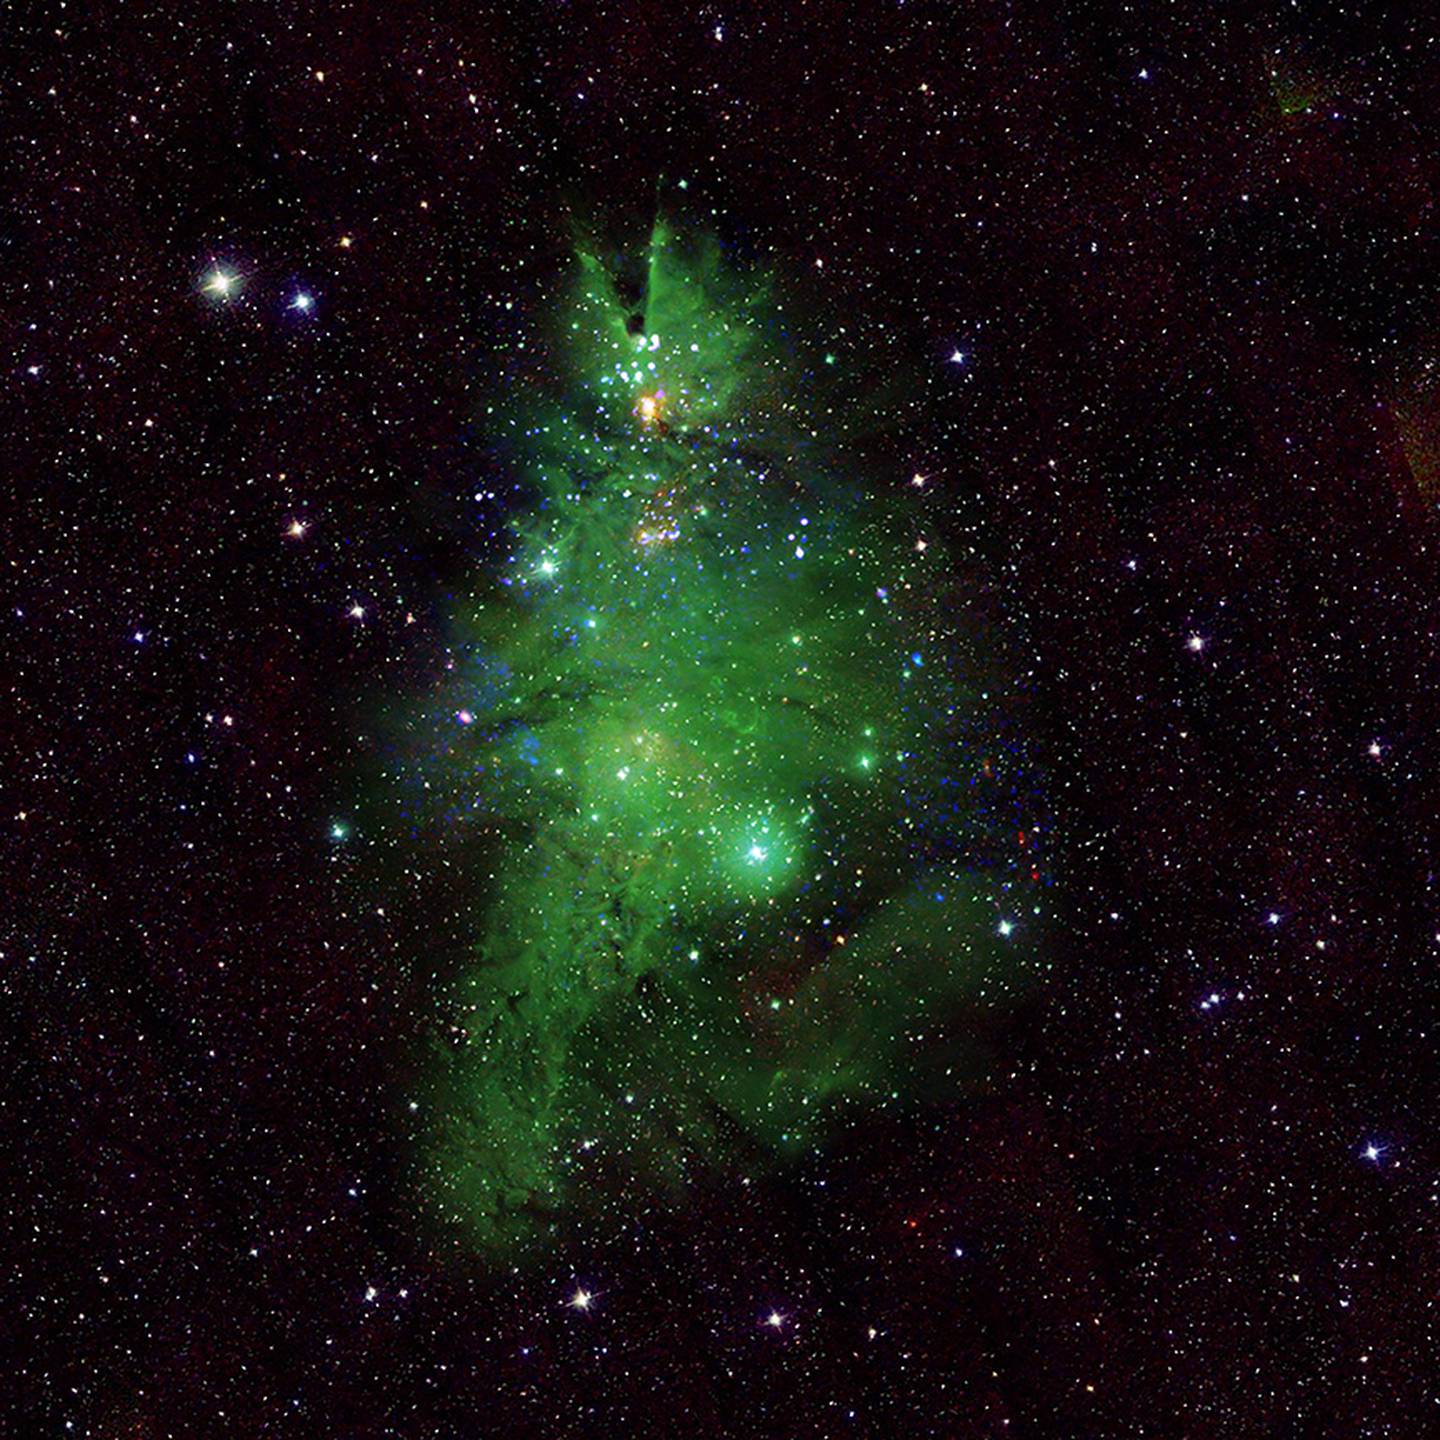 La NASA compartió la imagen de un cúmulo de estrellas jóvenes denominado NGC2264, mejor conocida como cúmulo de "Árboles de Navidad".